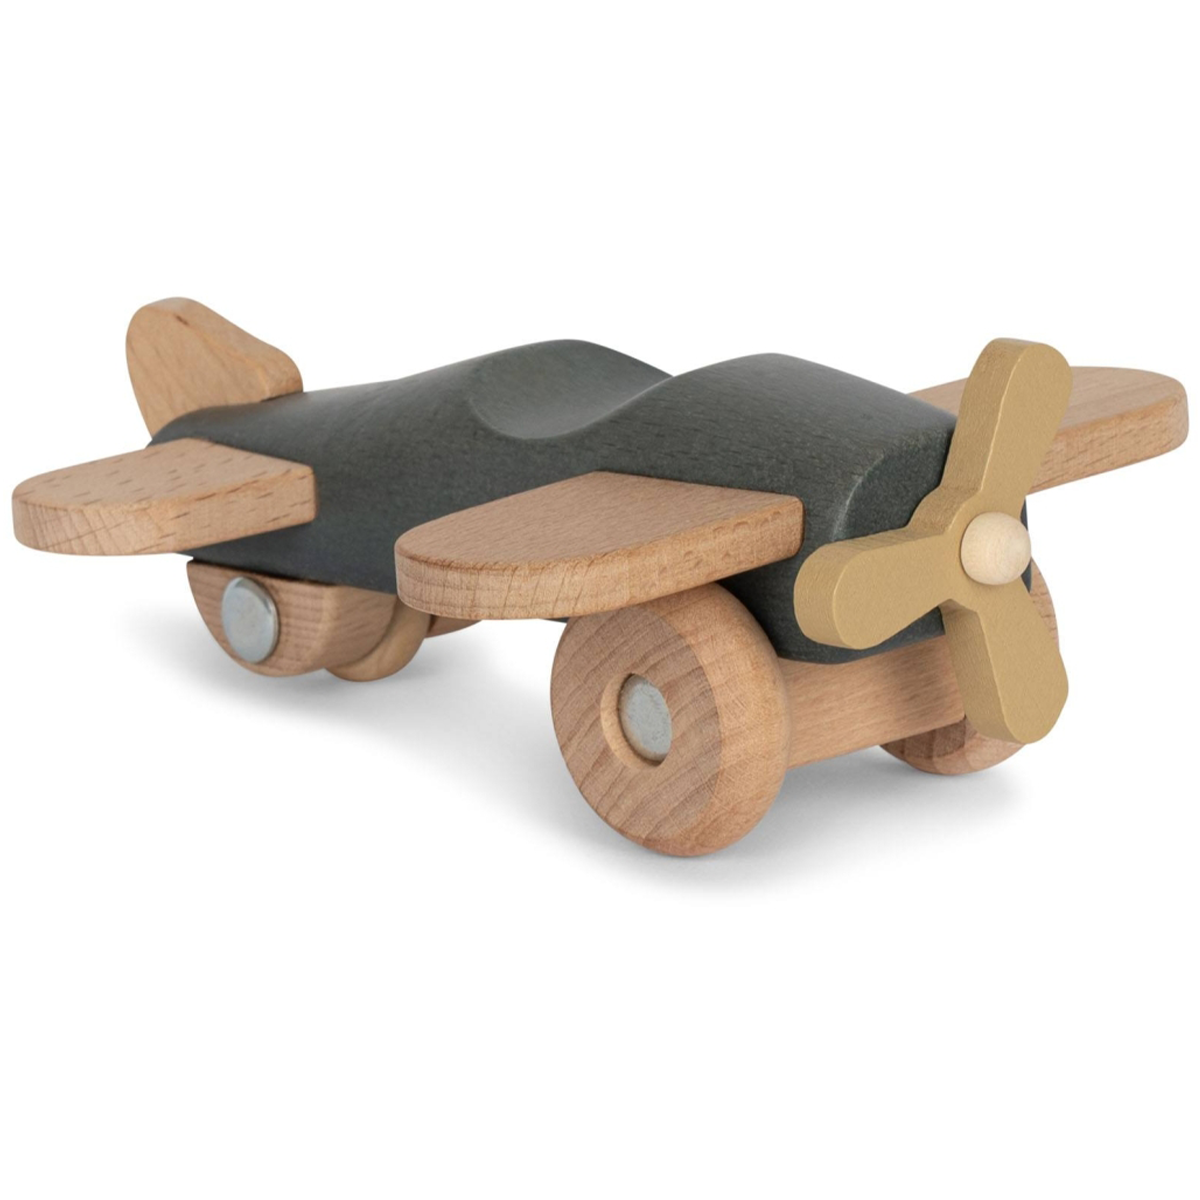 Is jouw kindje gek op vliegtuigen? Dan is dit houten vliegtuig blue van Konges Slojd een must have voor in de speelgoedkist.  Dit mooie vliegtuig is gemaakt van 100% FSC gecertificeerd beukenhout en is daarom erg duurzaam. Het vliegtuig heeft een blauwe kleur. VanZus